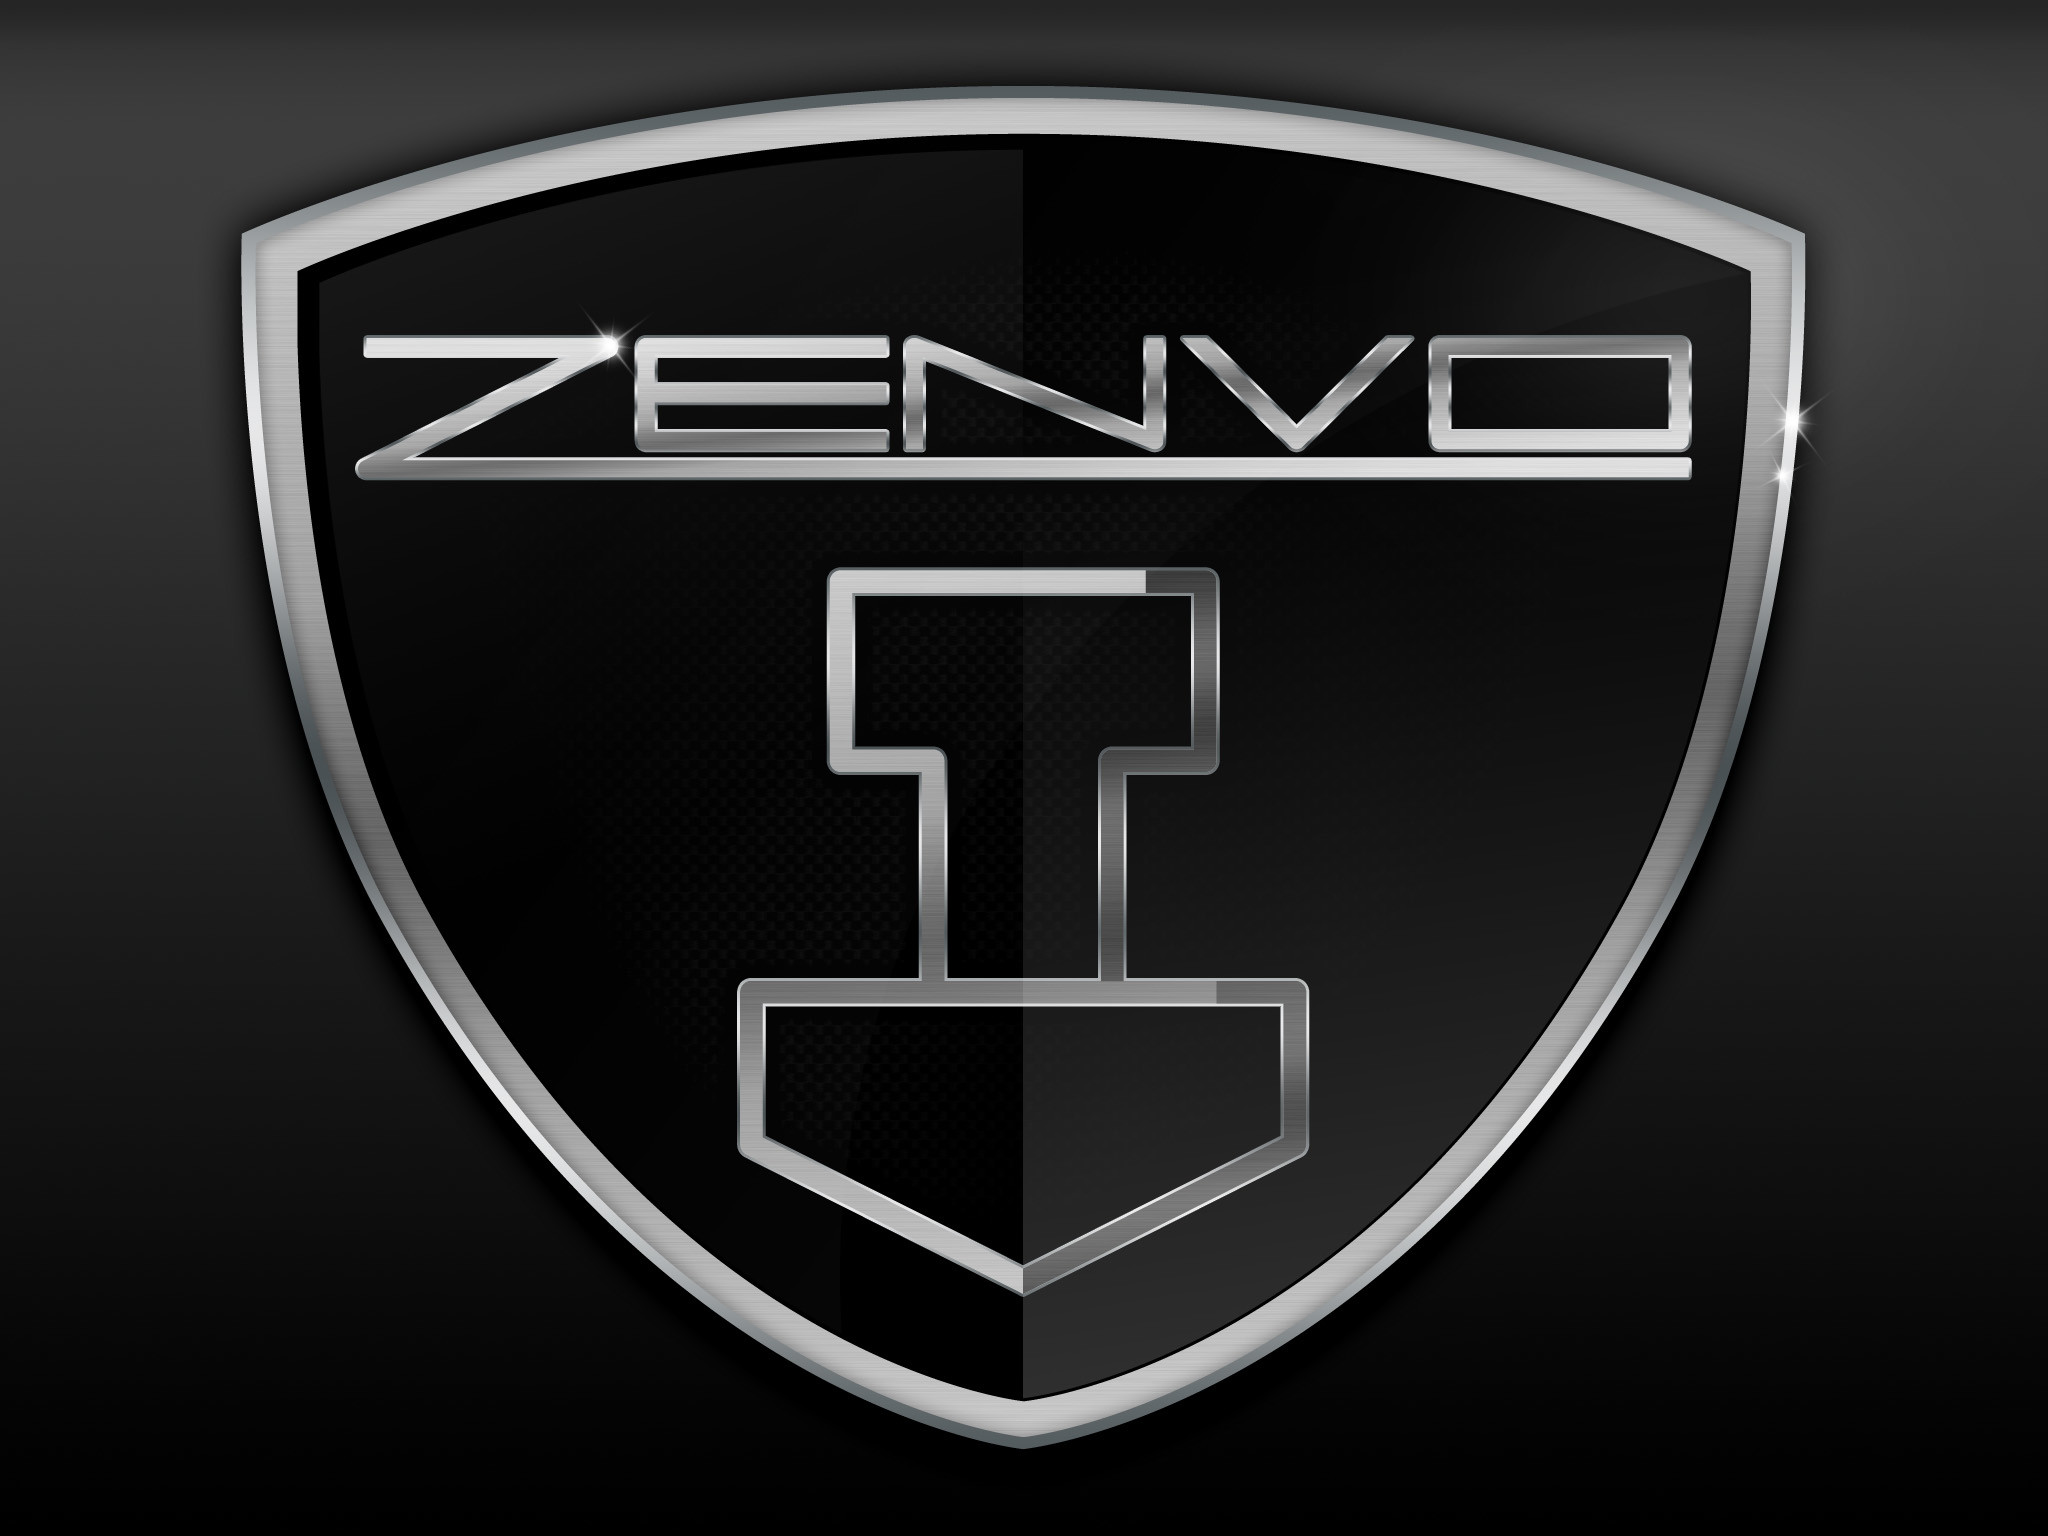 Zenvo Logo Hd Google Search - Zenvo Logo - HD Wallpaper 